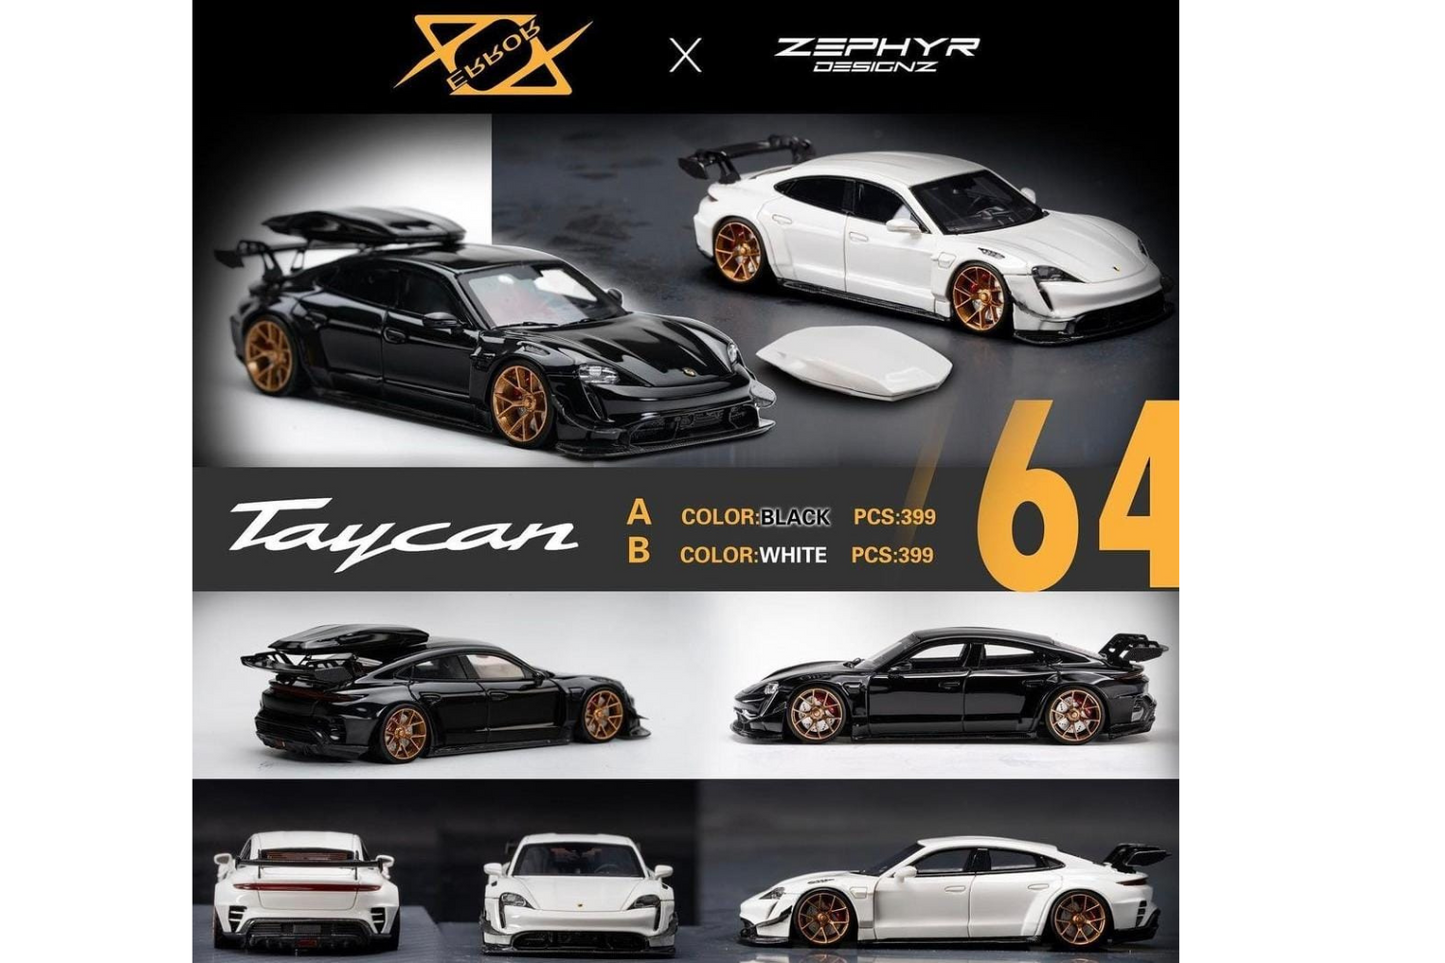 Error 404 x Zephyr Designz 1/64 Porsche Taycan Wide Body